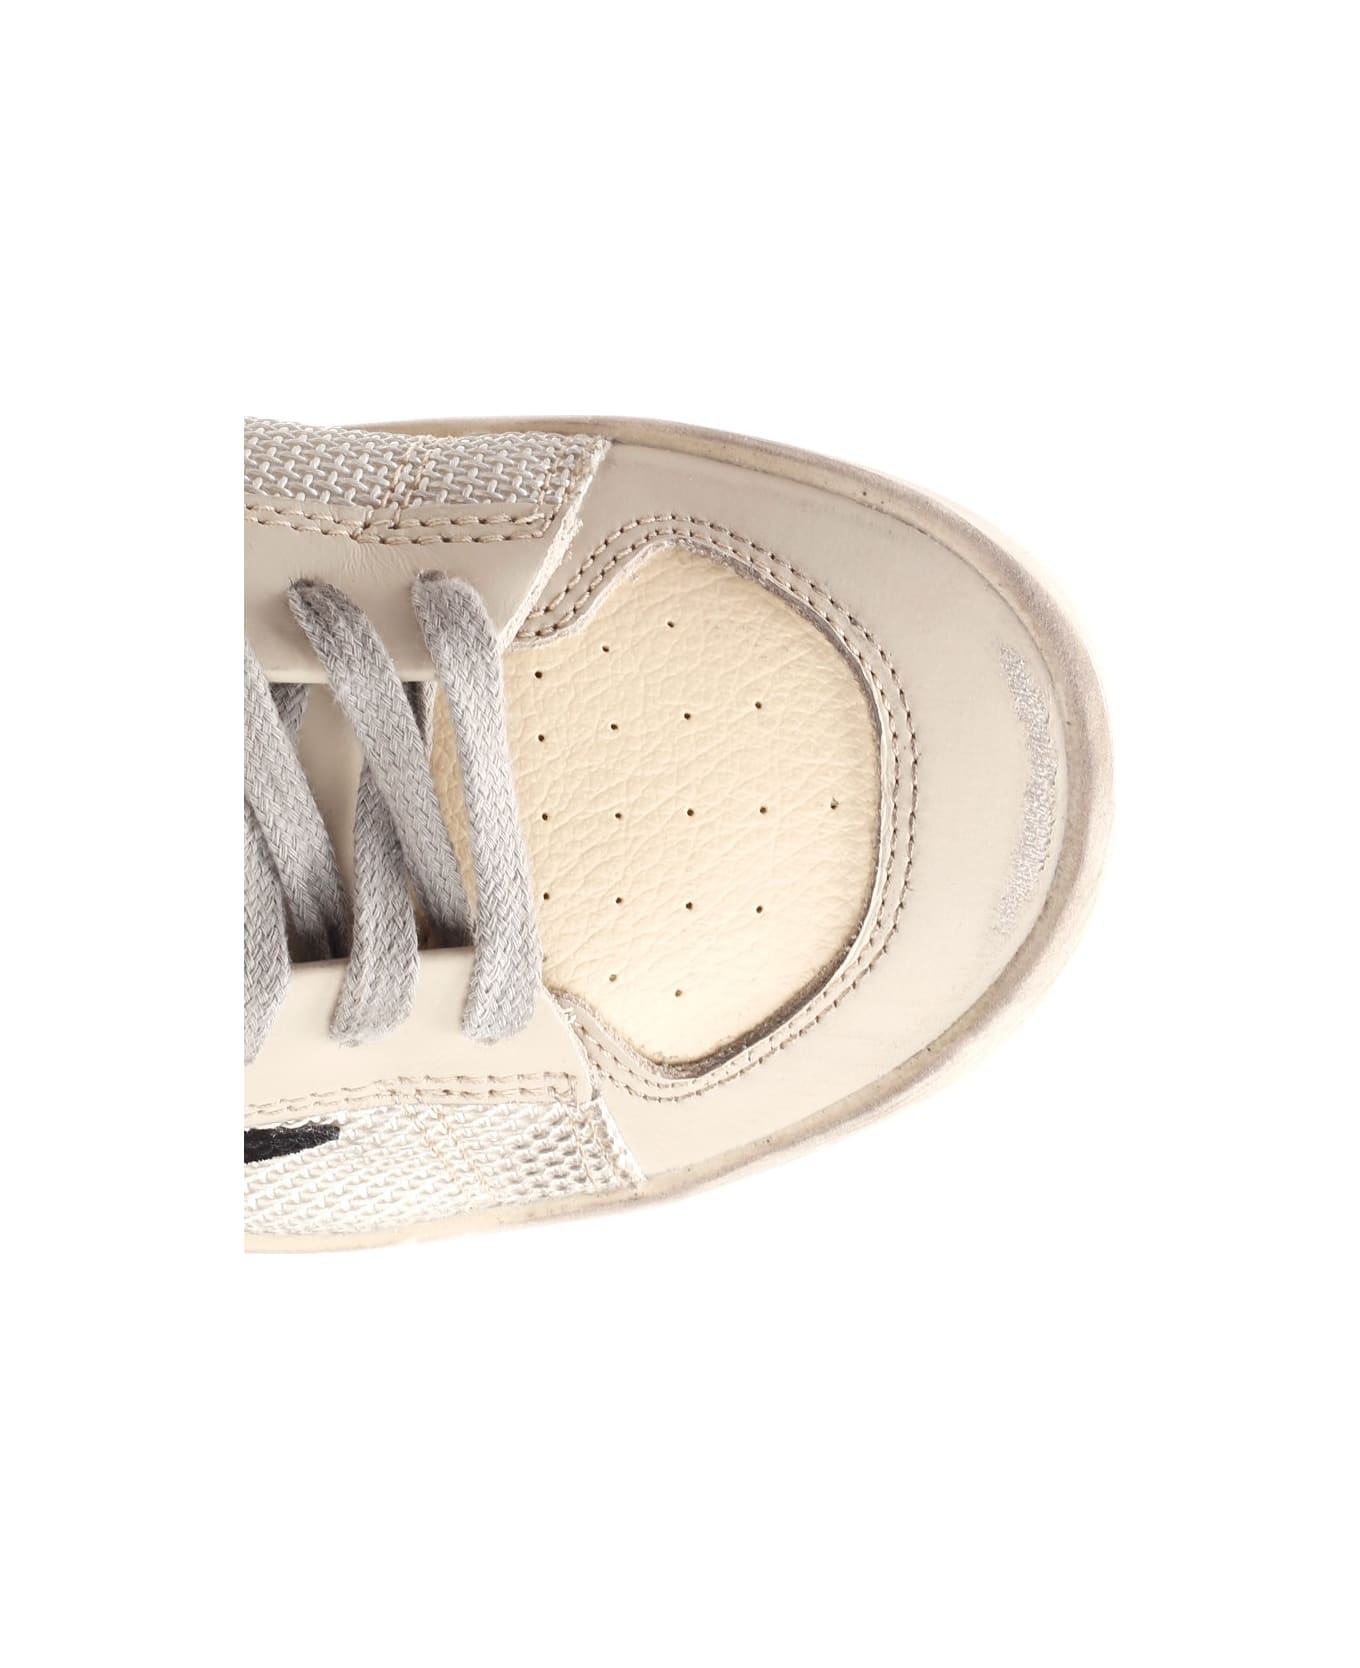 Golden Goose Stardan Sneakers - Sand/light silver/black/white スニーカー